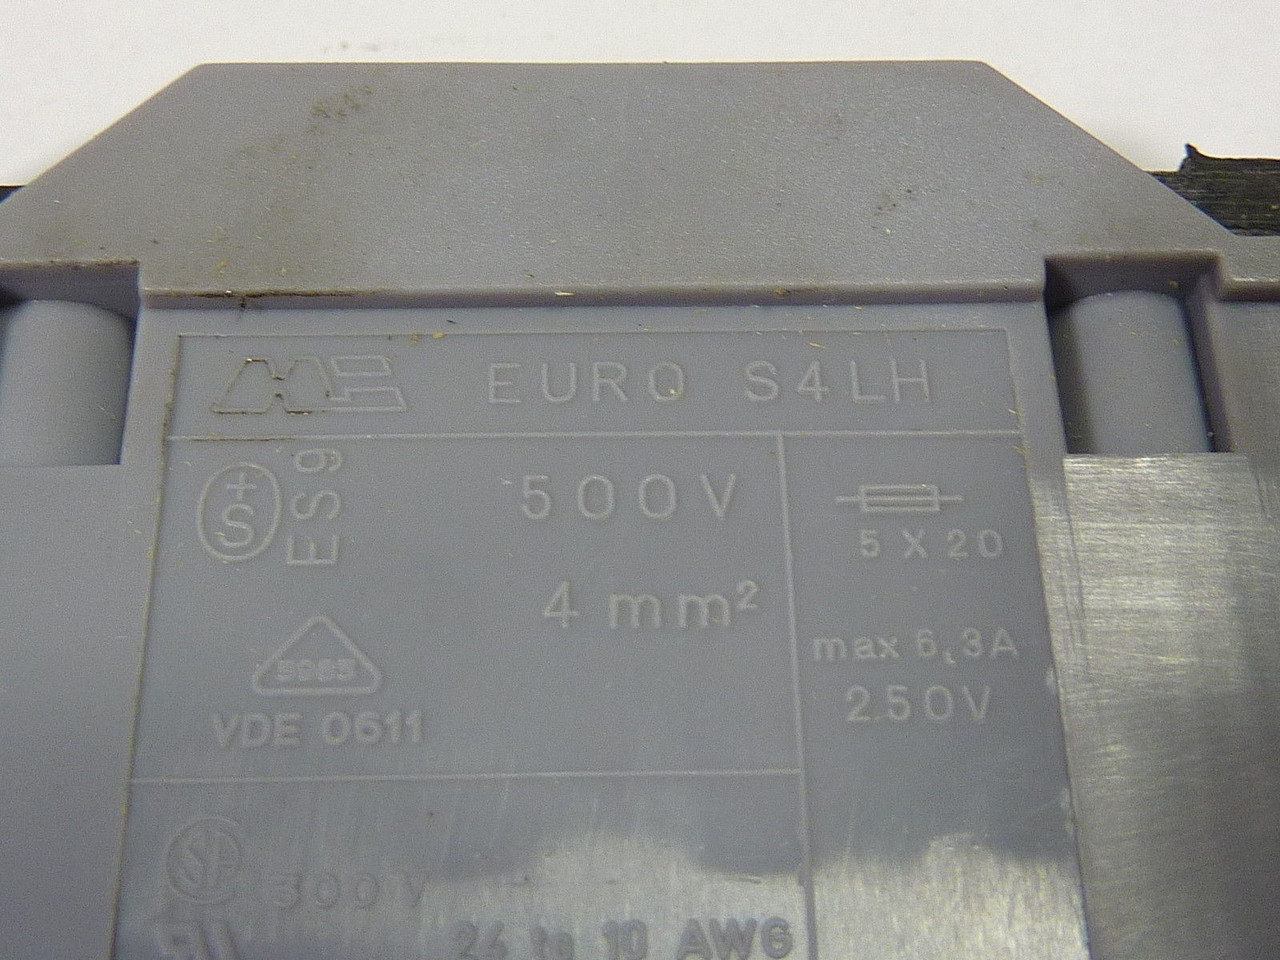 Morsettitalia EURO S4LH Terminal Box 500V USED